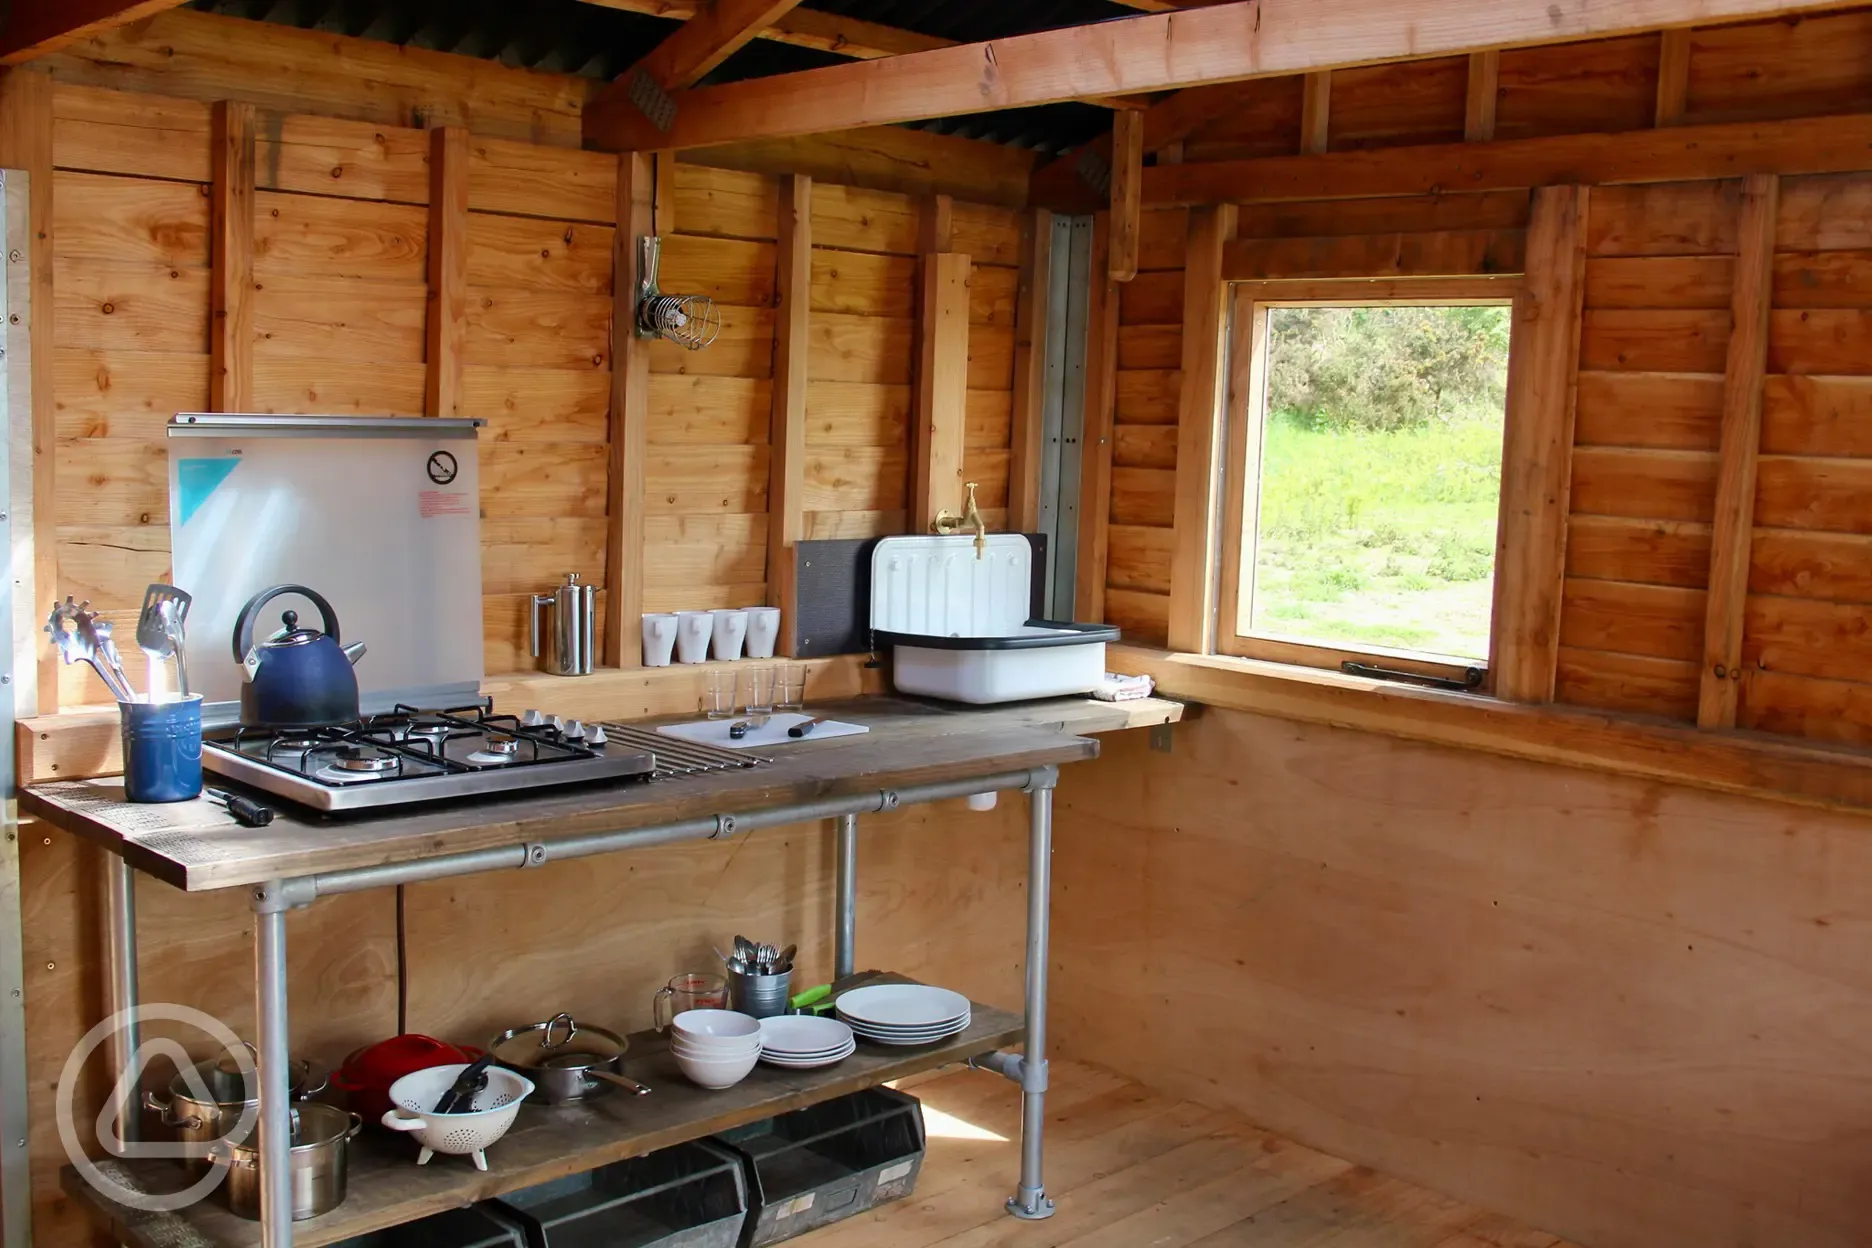 Eco cabin kitchen area